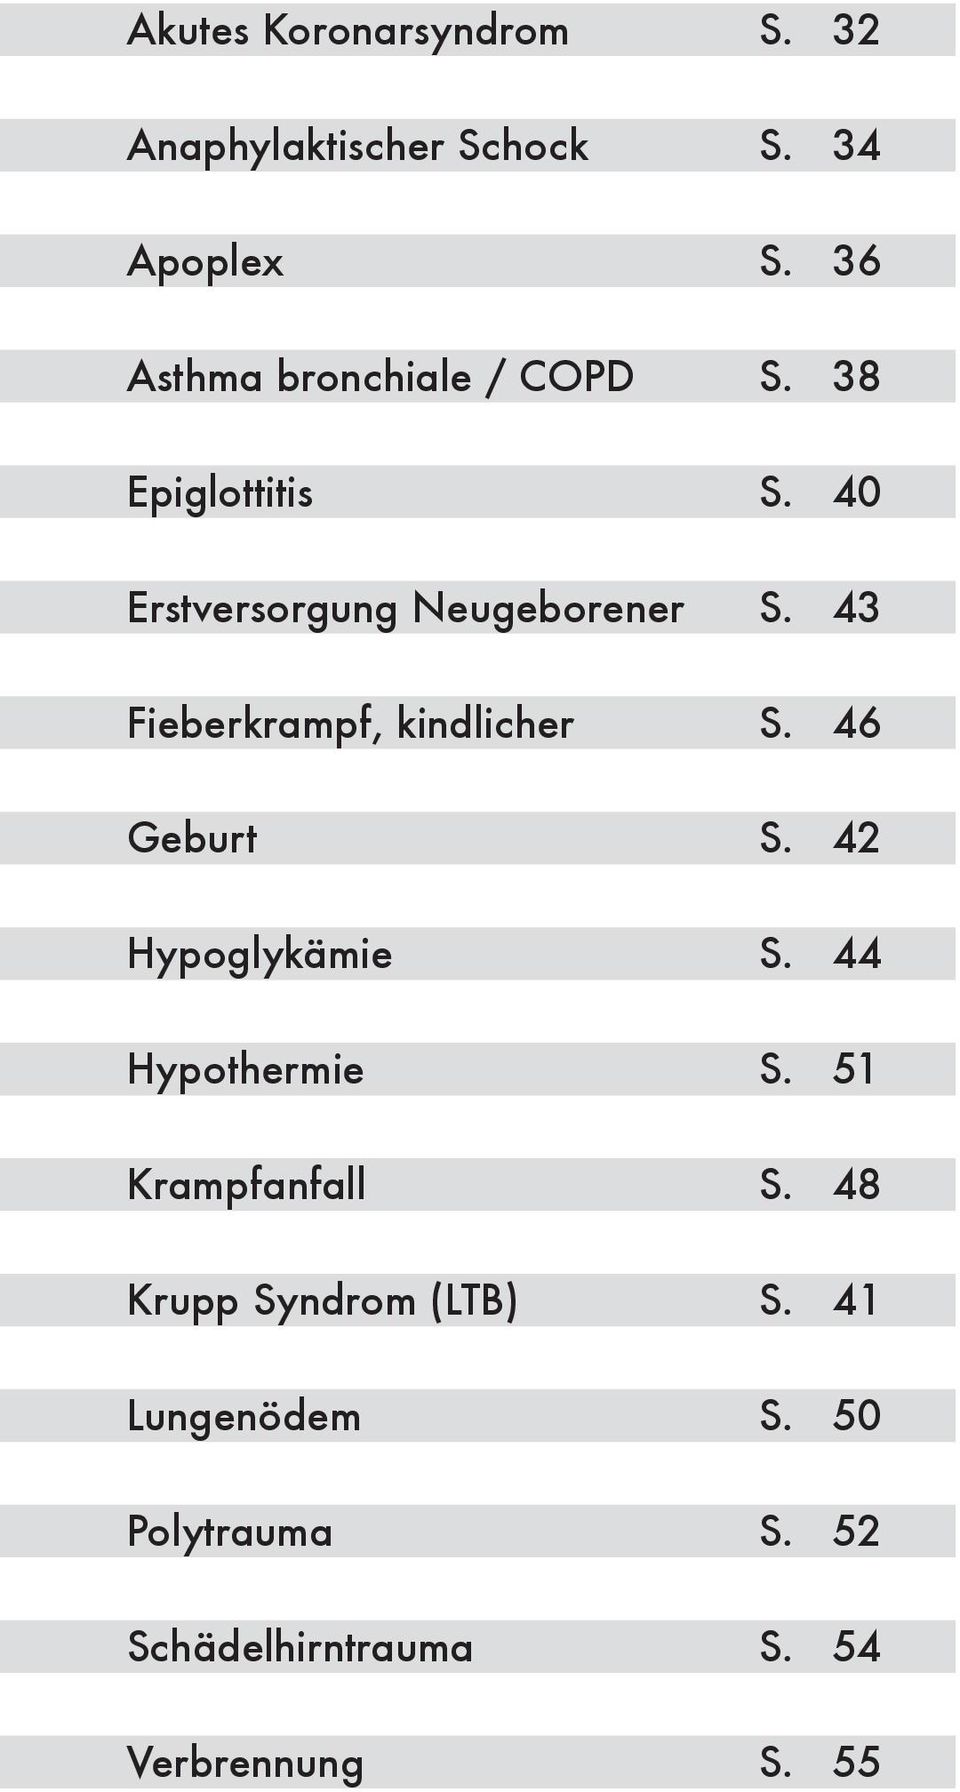 43 Fieberkrampf, kindlicher S. 46 Geburt S. 42 Hypoglykämie S. 44 Hypothermie S.